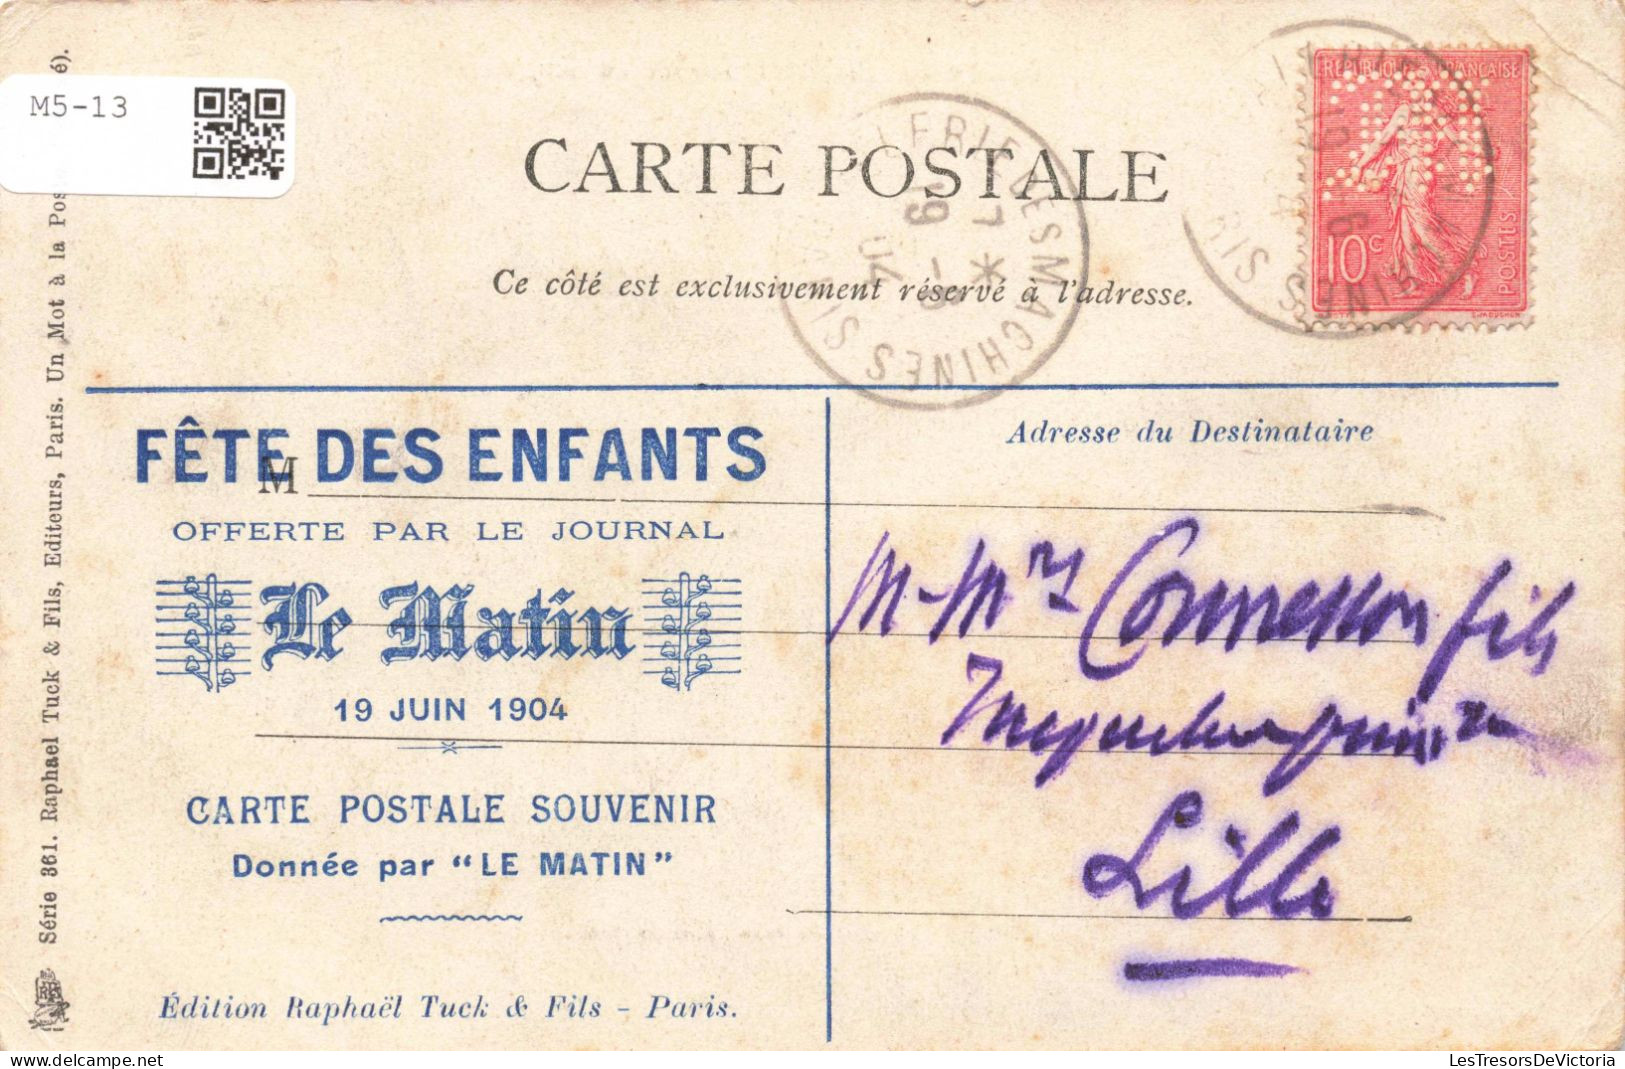 ALGERIE - Voyage Du Président - Carte Postale Ancienne - Hommes